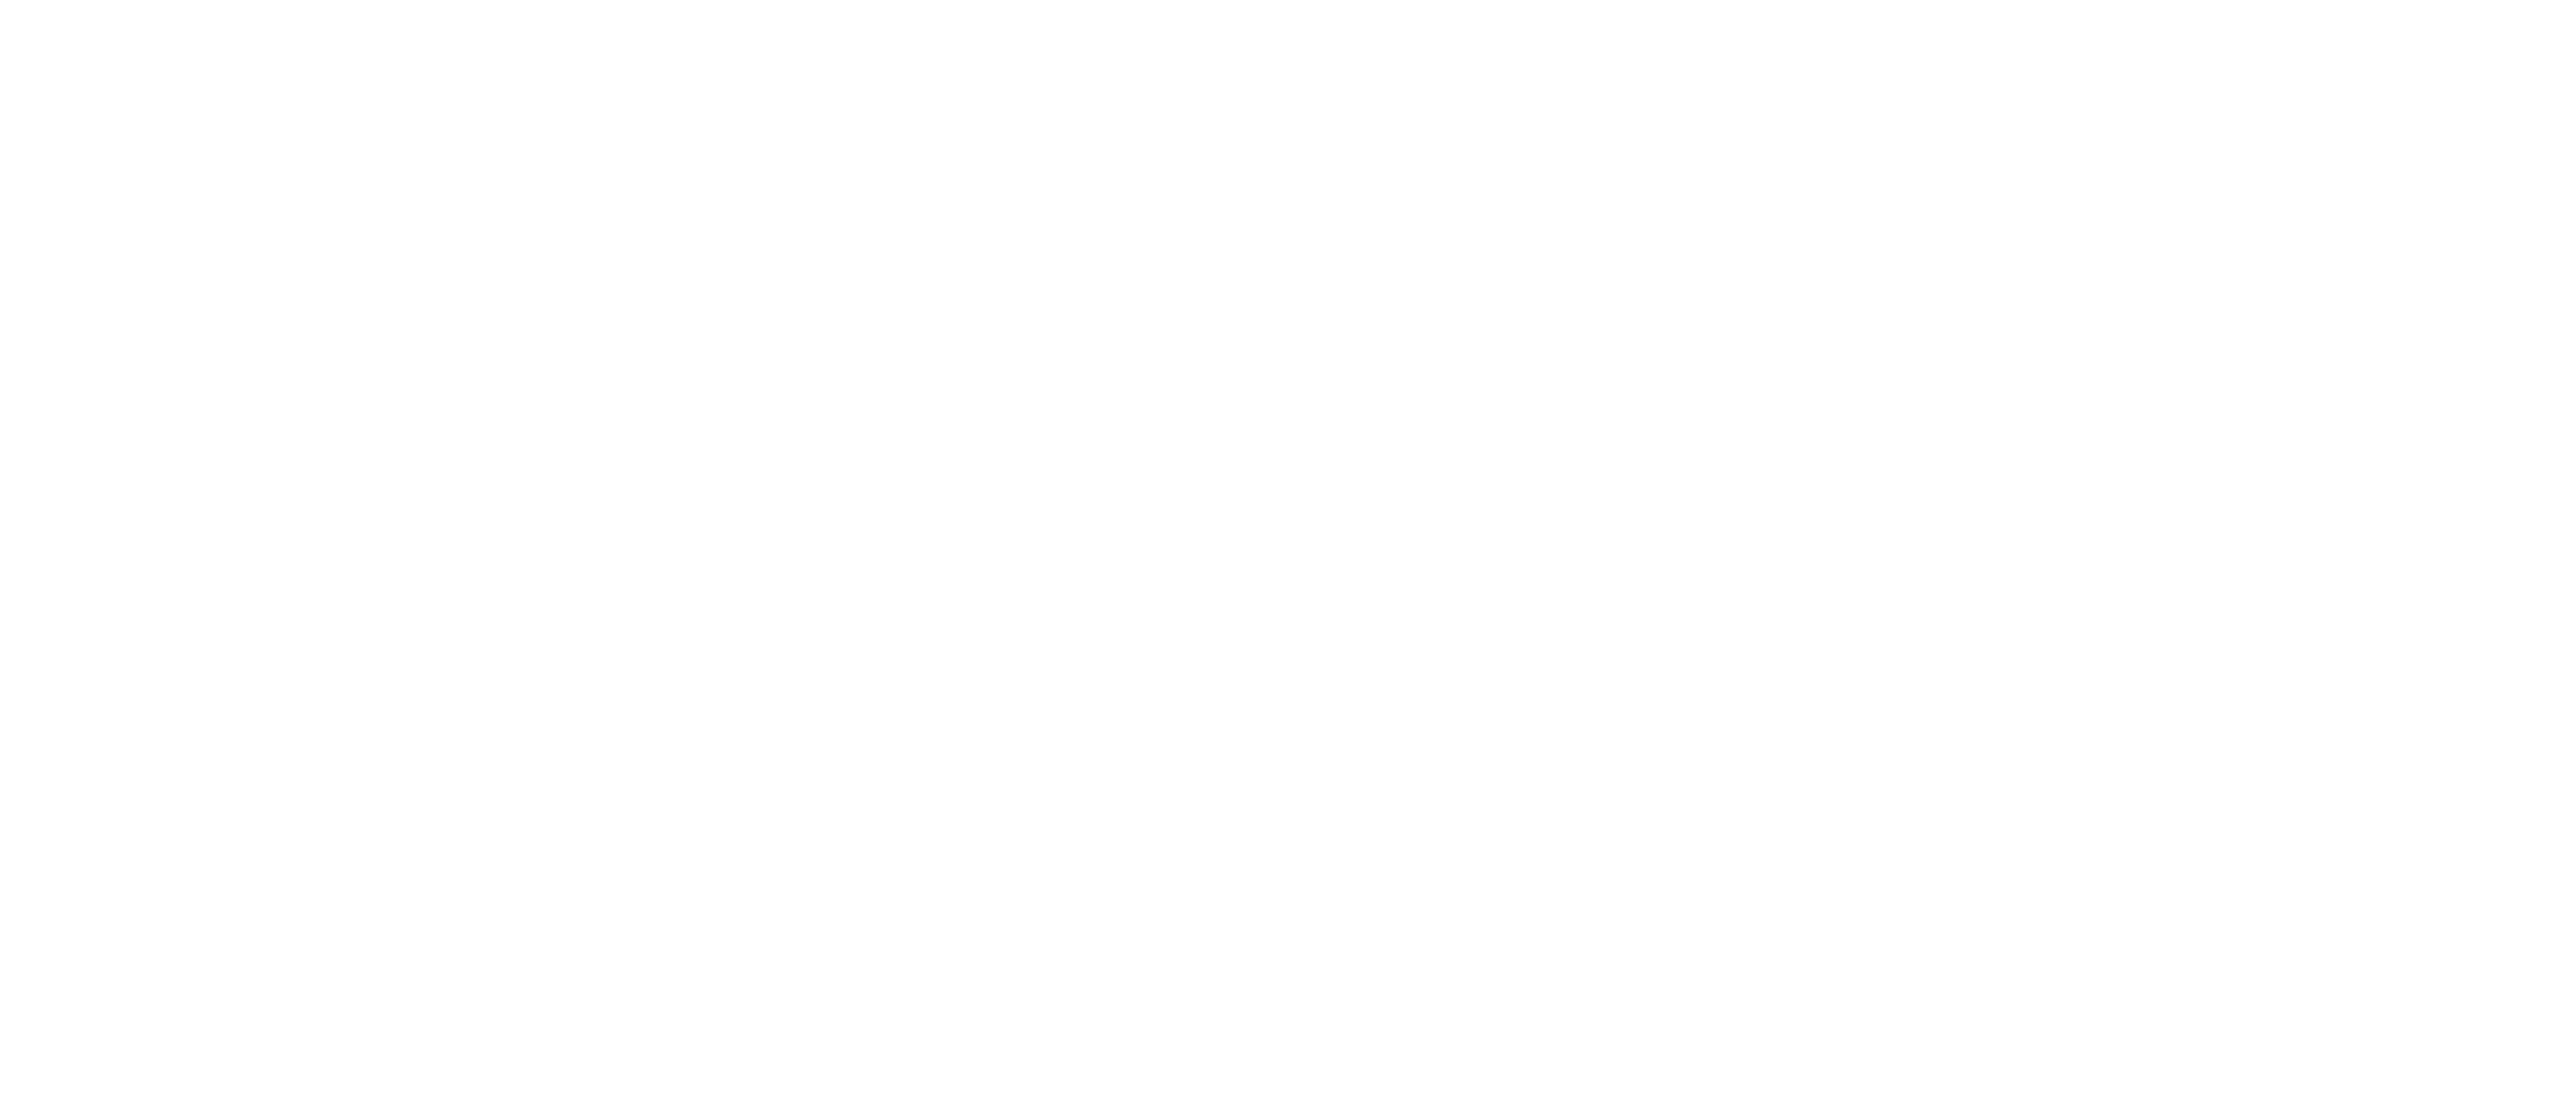 Instituto de Bioética | Universidad Finis Terrae